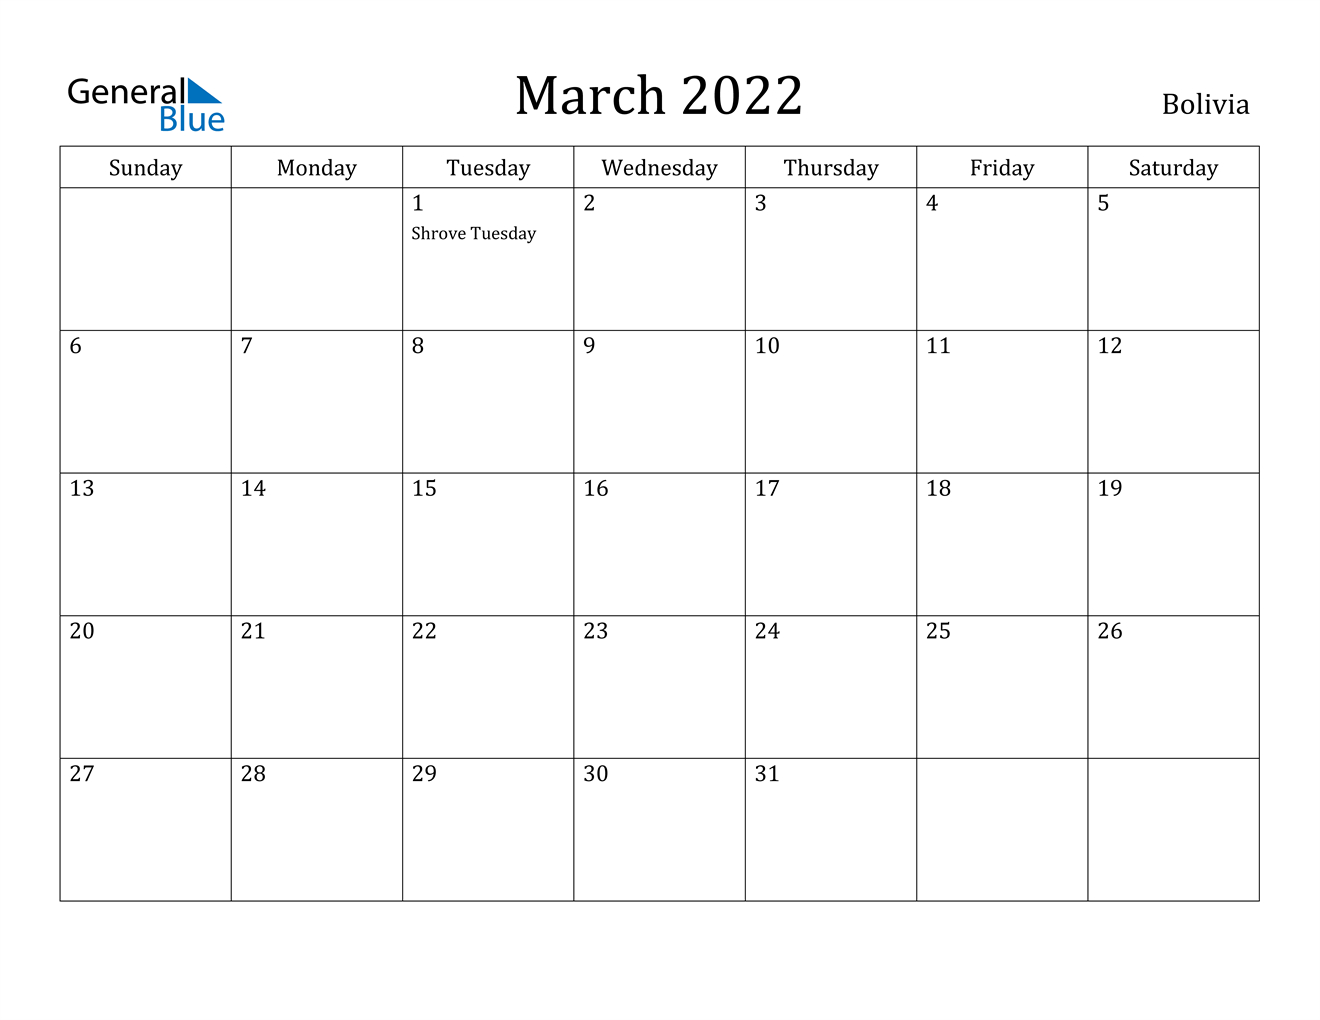 March 2022 Calendar - Bolivia